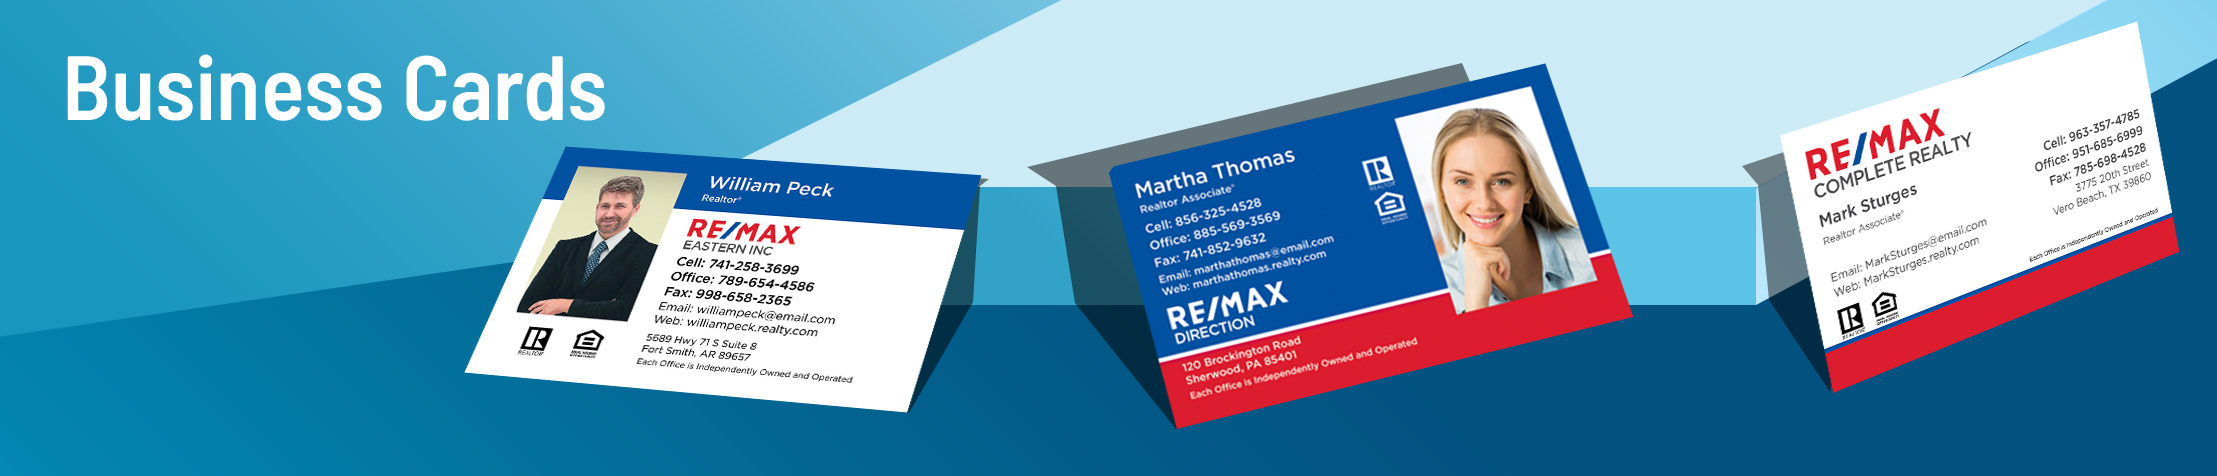 RE/MAX  Business Cards | Sparkprint.com